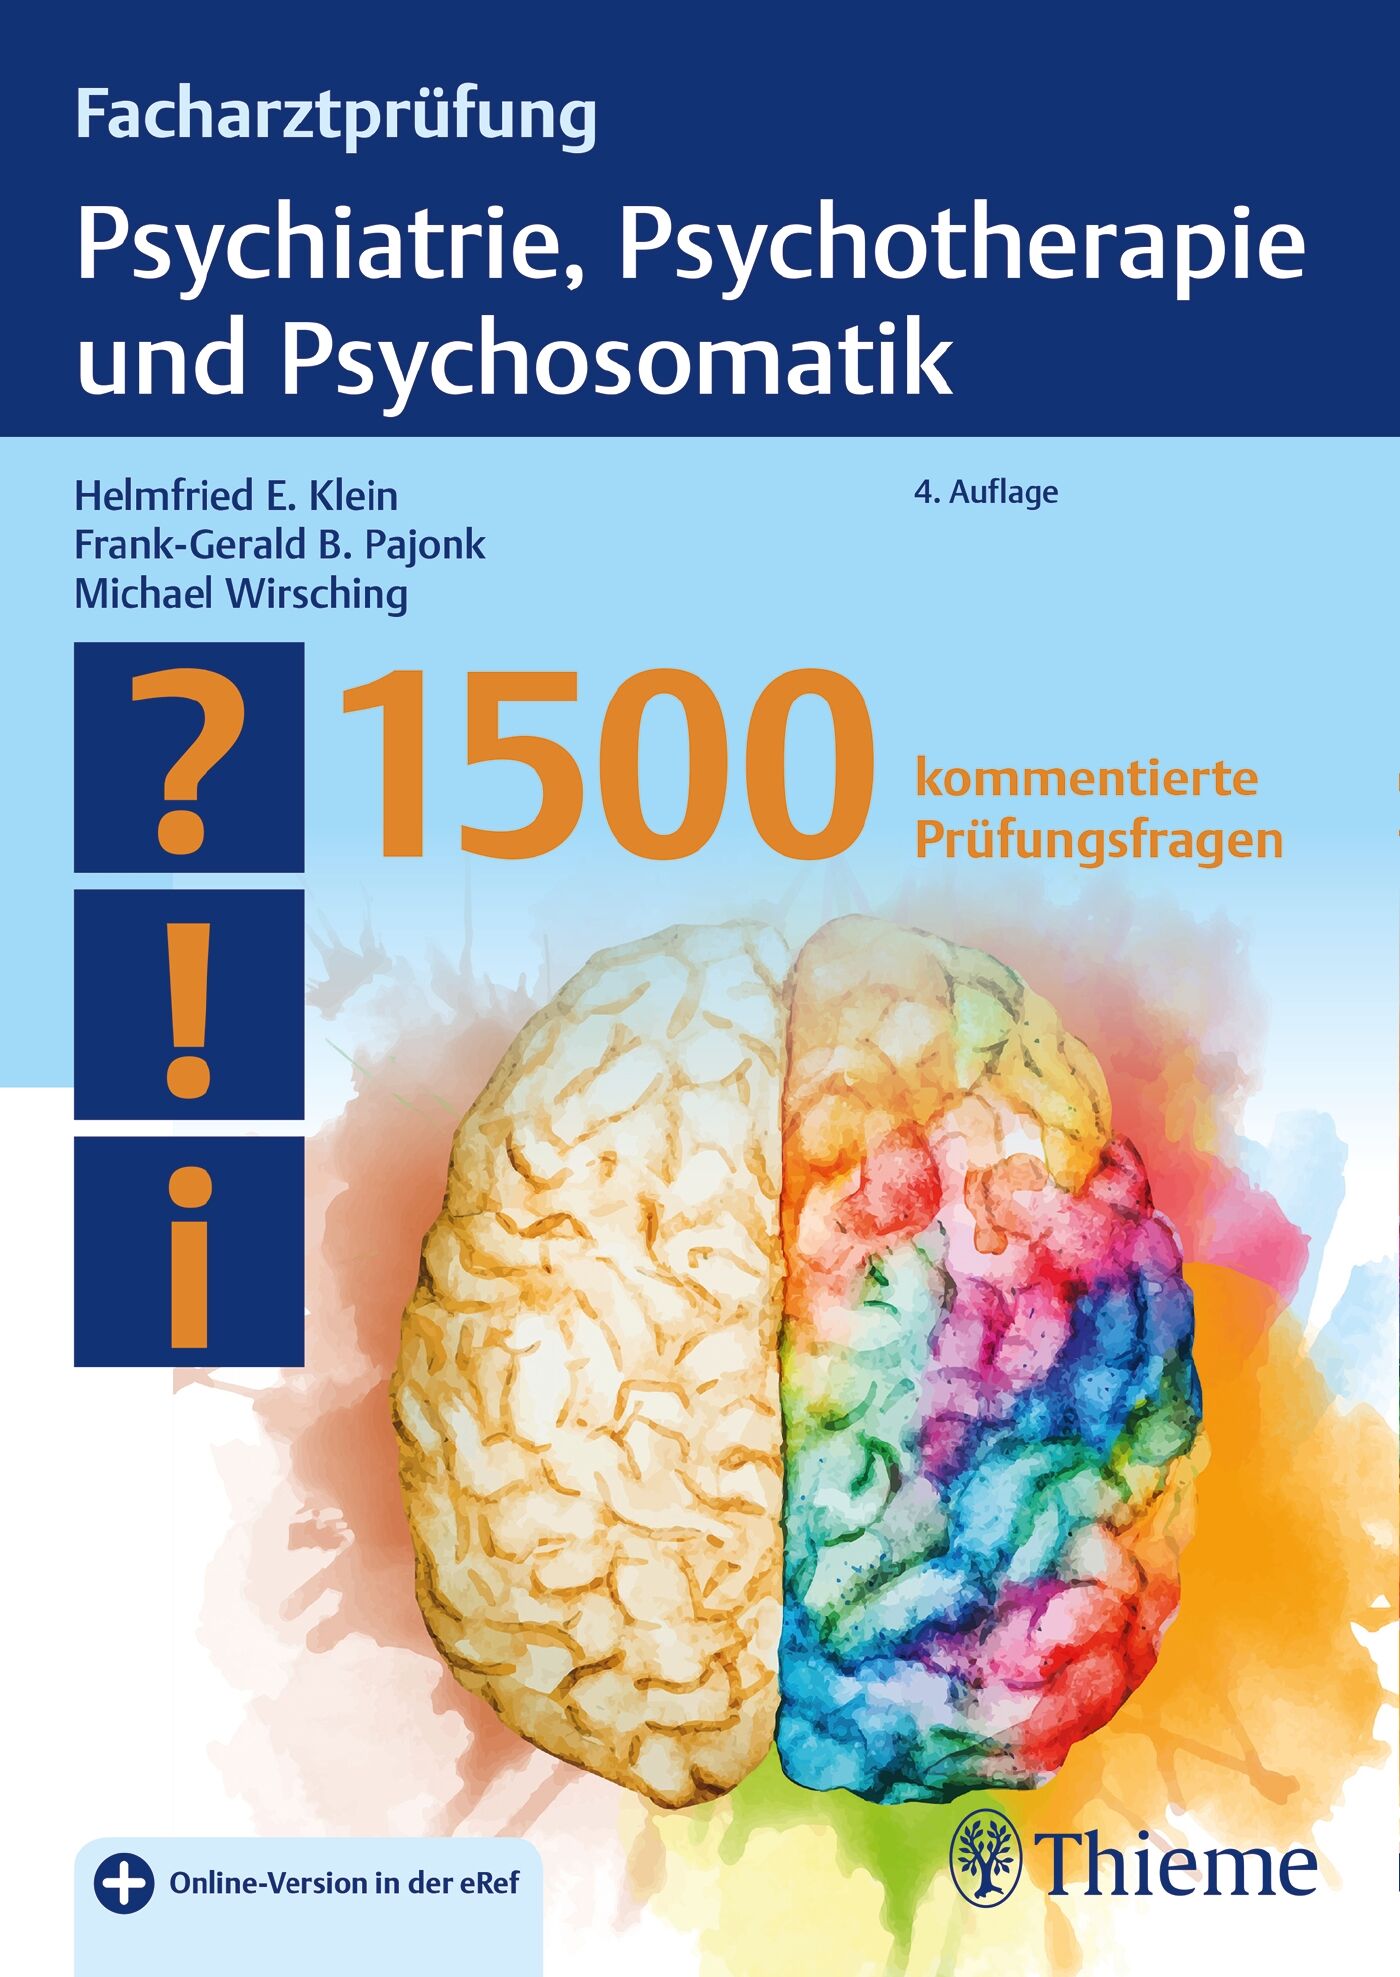 Facharztprüfung Psychiatrie, Psychotherapie und Psychosomatik, 9783132403314